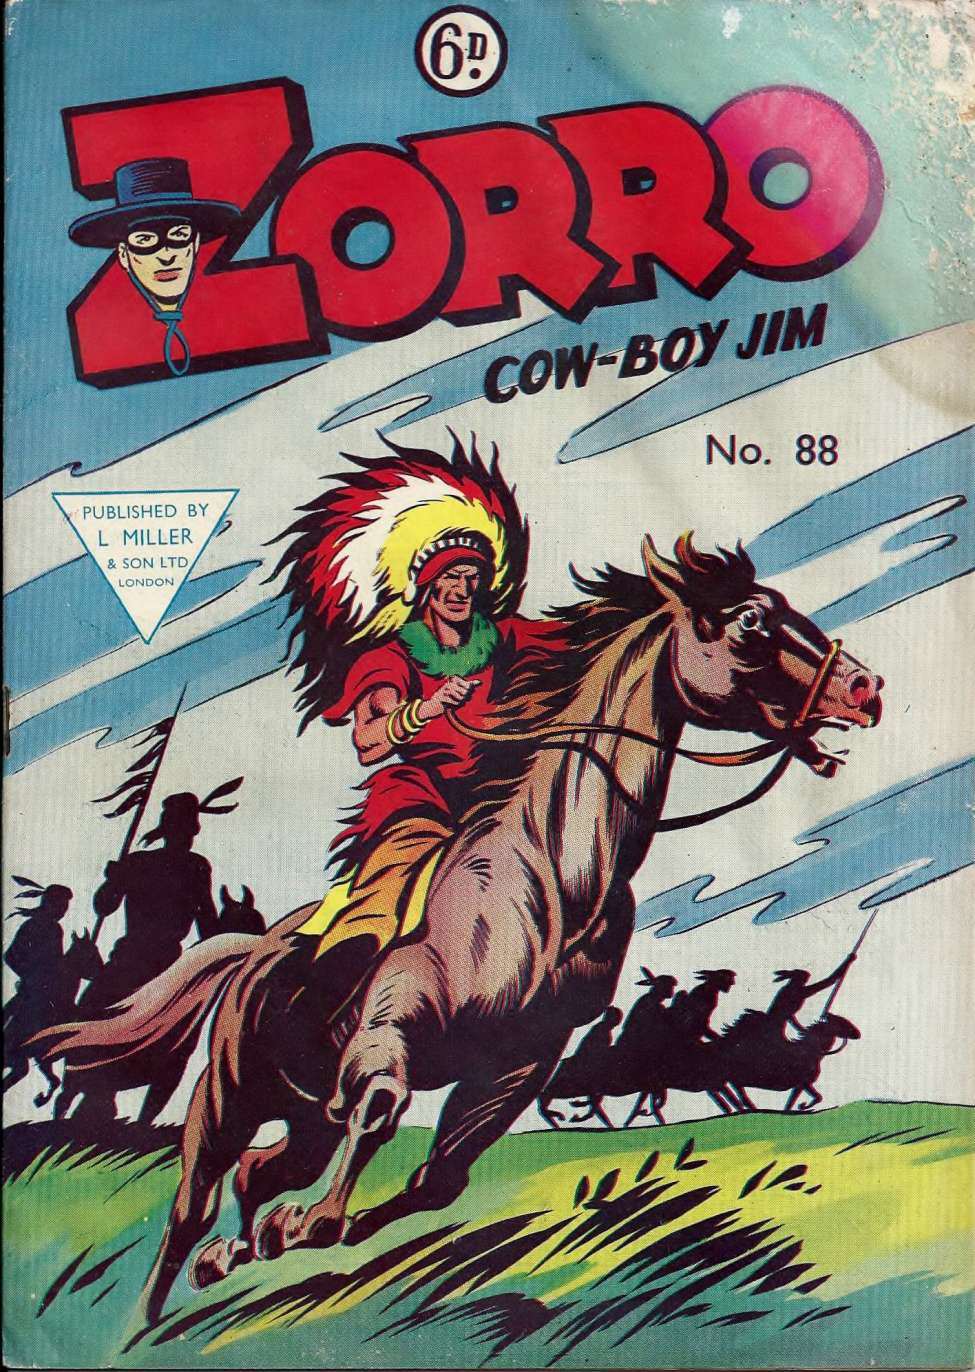 Comic Book Cover For Zorro 88 - Cow-boy Jim